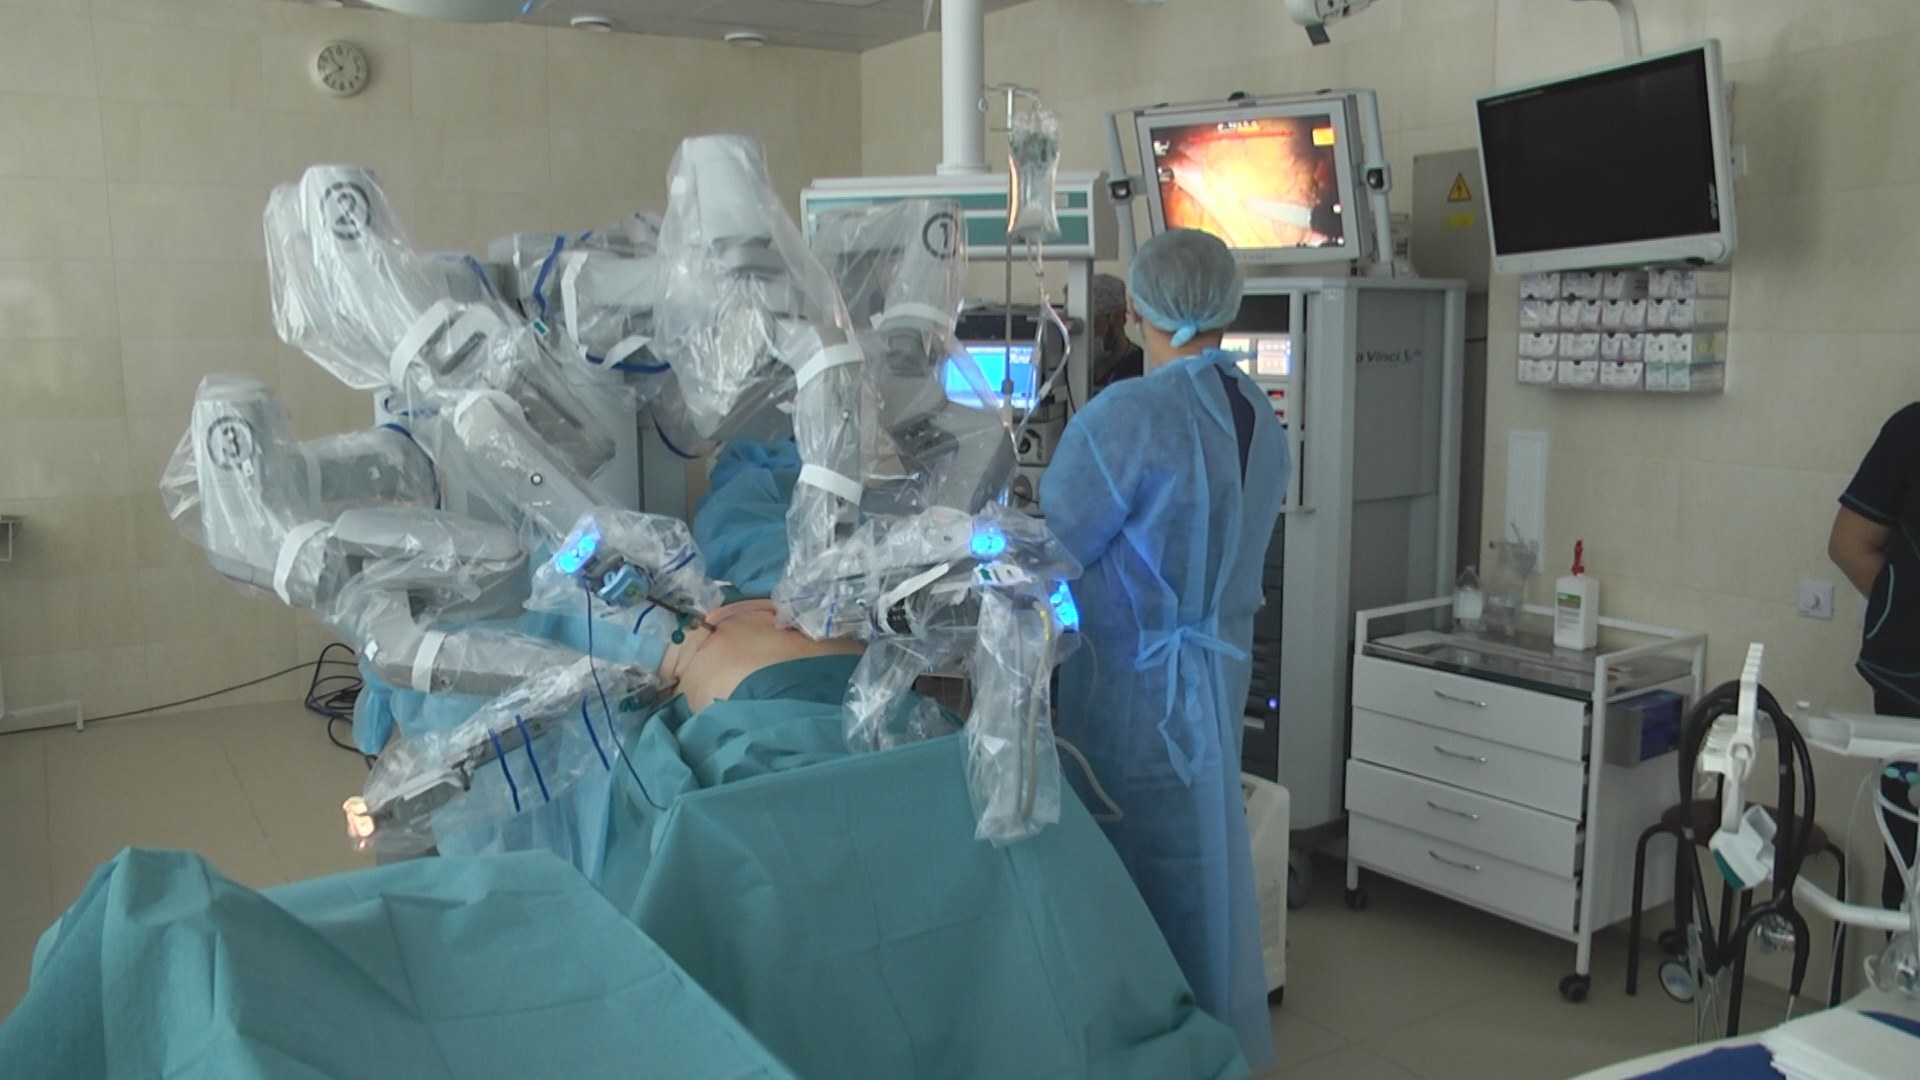 Операція в декілька "рук": як працює єдиний в Україні робот-хірург